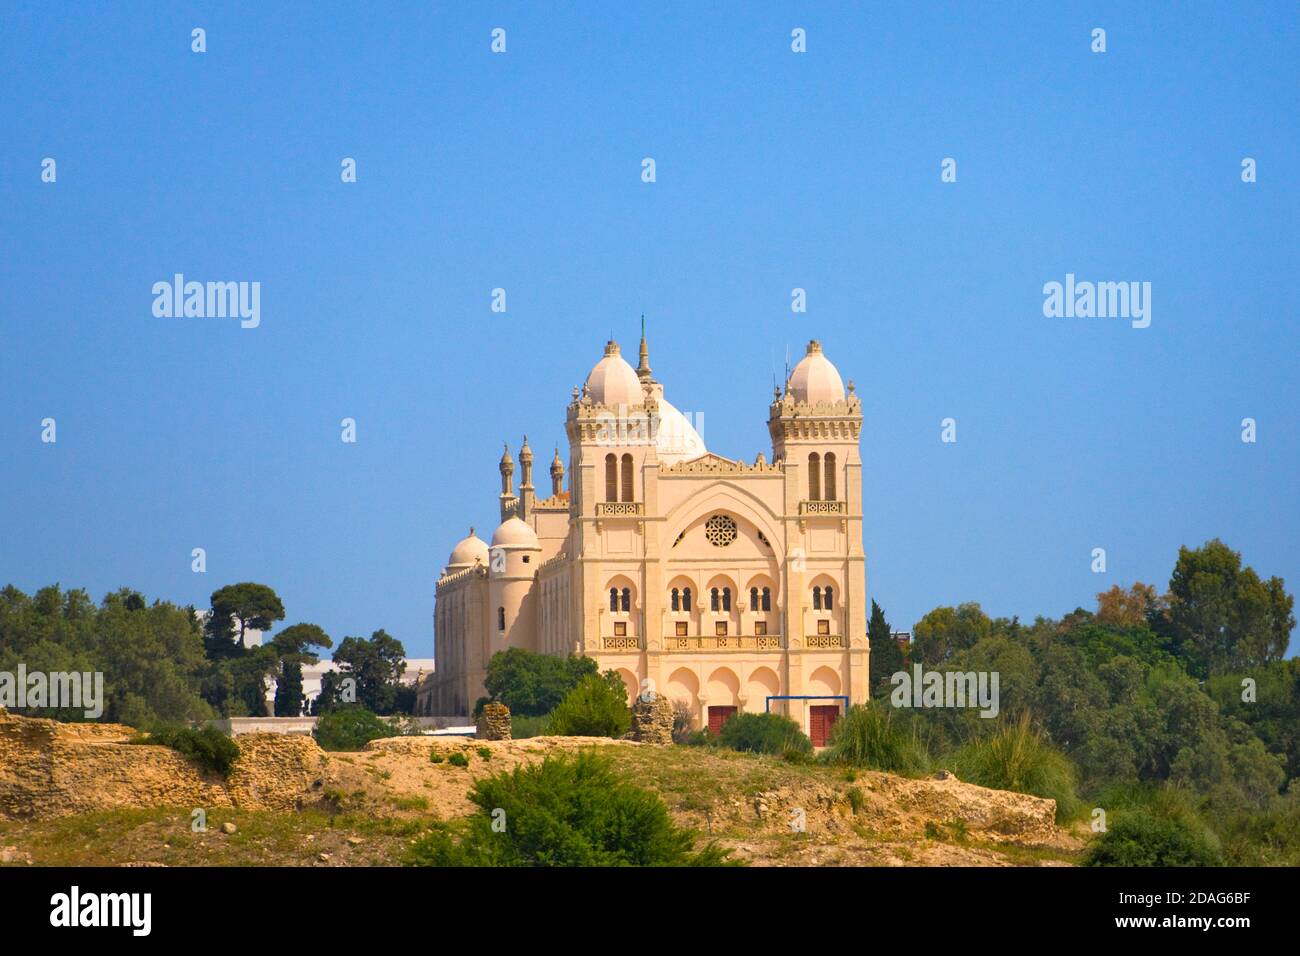 Labas Mosque, Tunis, Tunisia Stock Photo